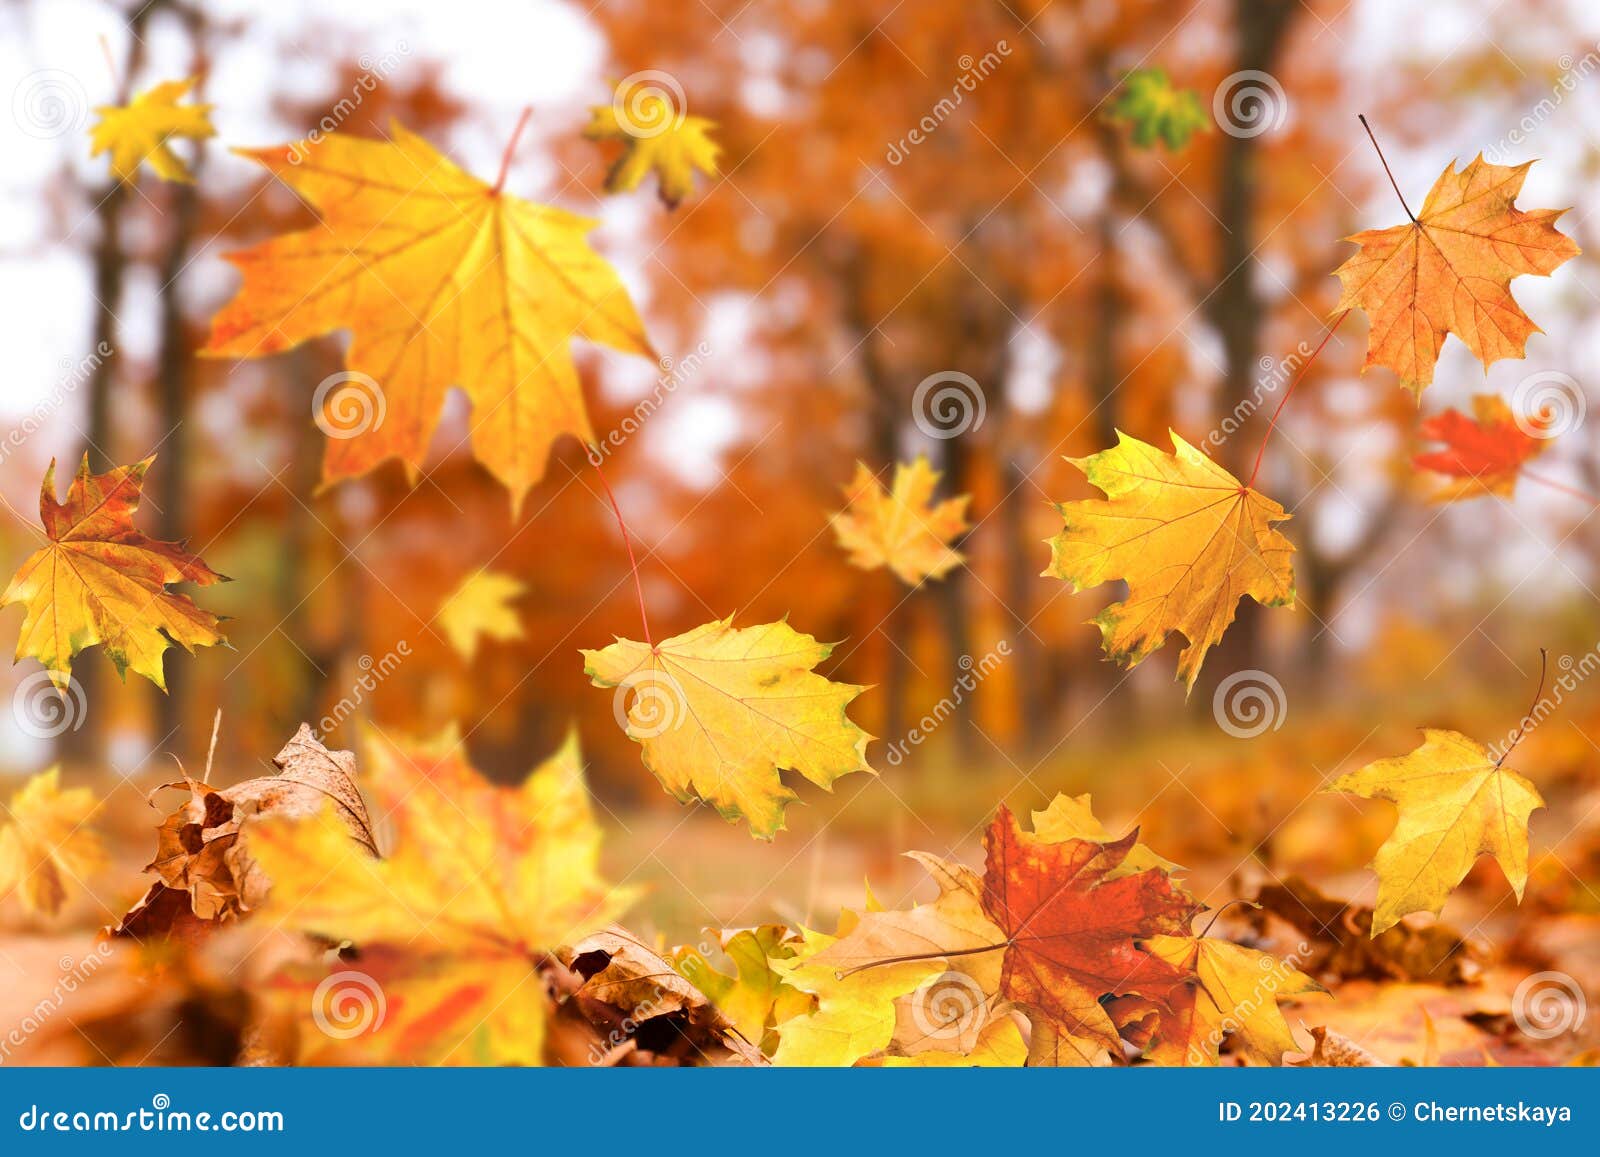 Folhas de outono caindo na estrada